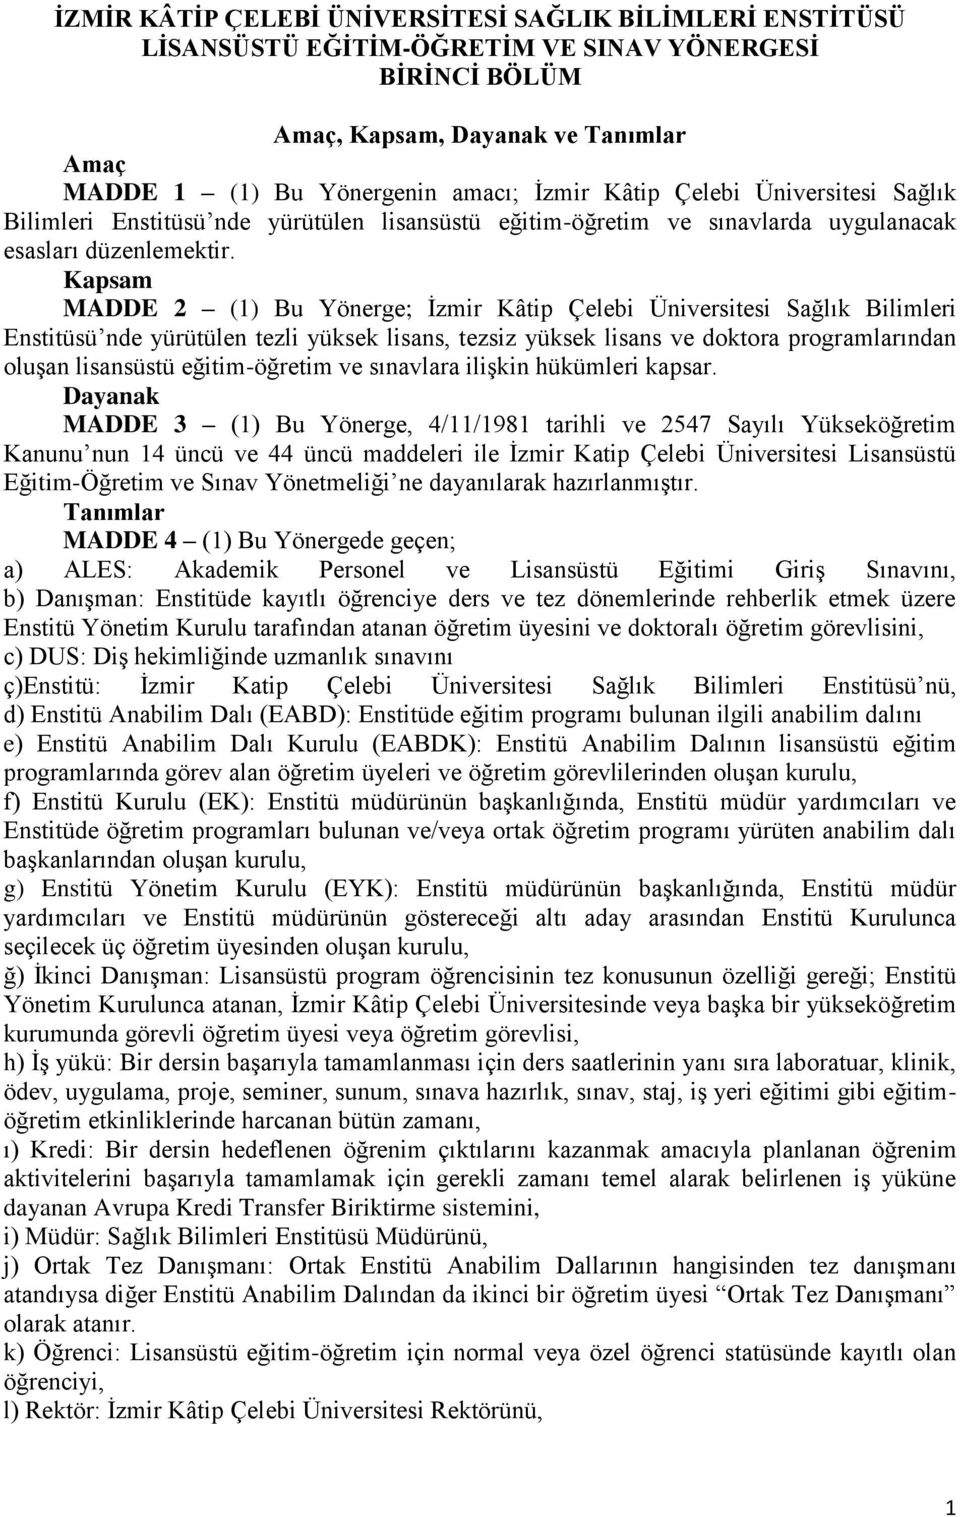 Kapsam MADDE 2 (1) Bu Yönerge; İzmir Kâtip Çelebi Üniversitesi Sağlık Bilimleri Enstitüsü nde yürütülen tezli yüksek lisans, tezsiz yüksek lisans ve doktora programlarından oluşan lisansüstü